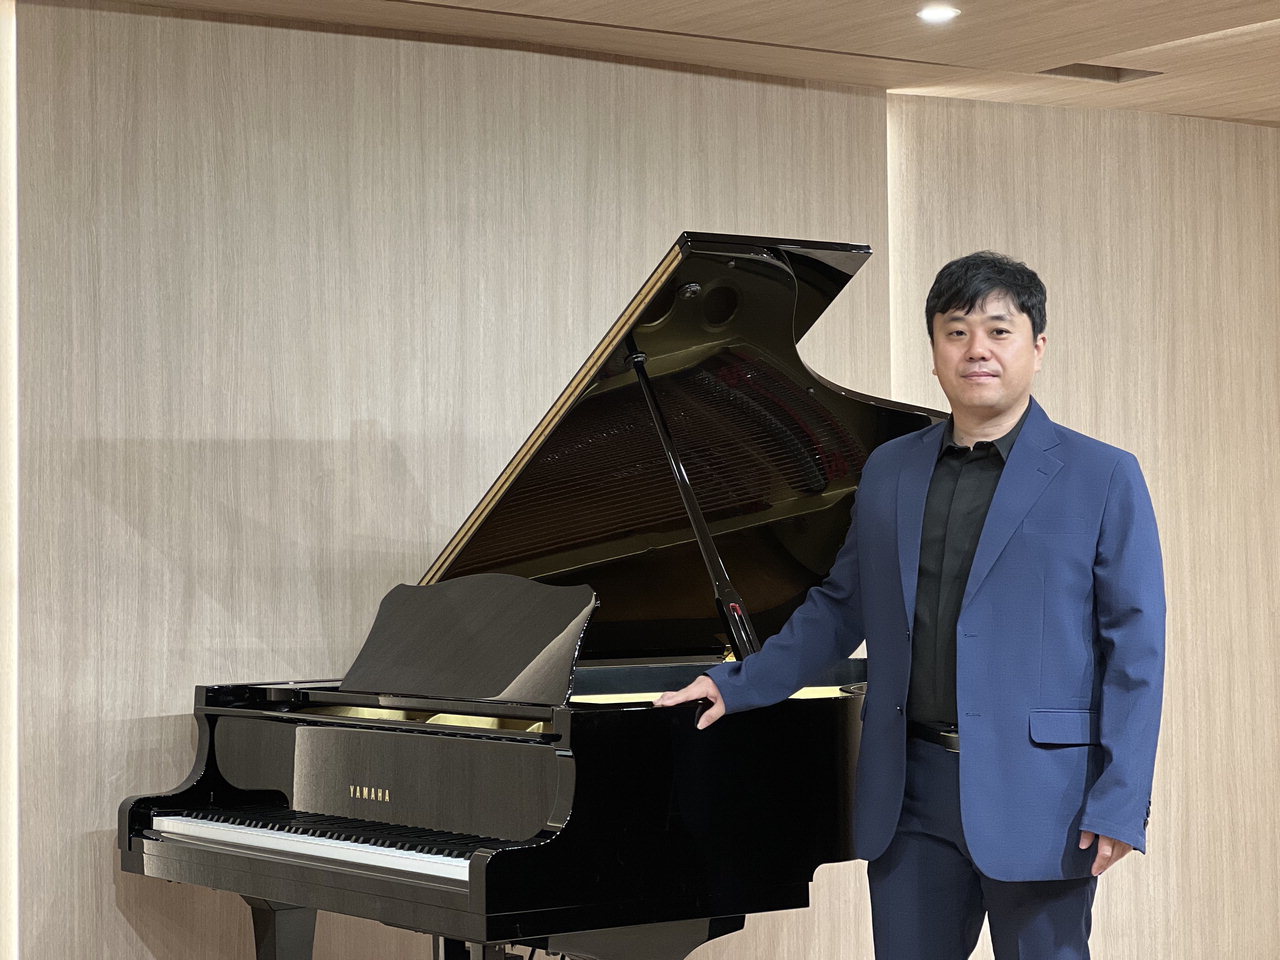 이훈희 공연세상 대표가 지난 21일 북문누리아트홀에 마련된 피아노 앞에서 환하게 웃고 있다. / 박은지